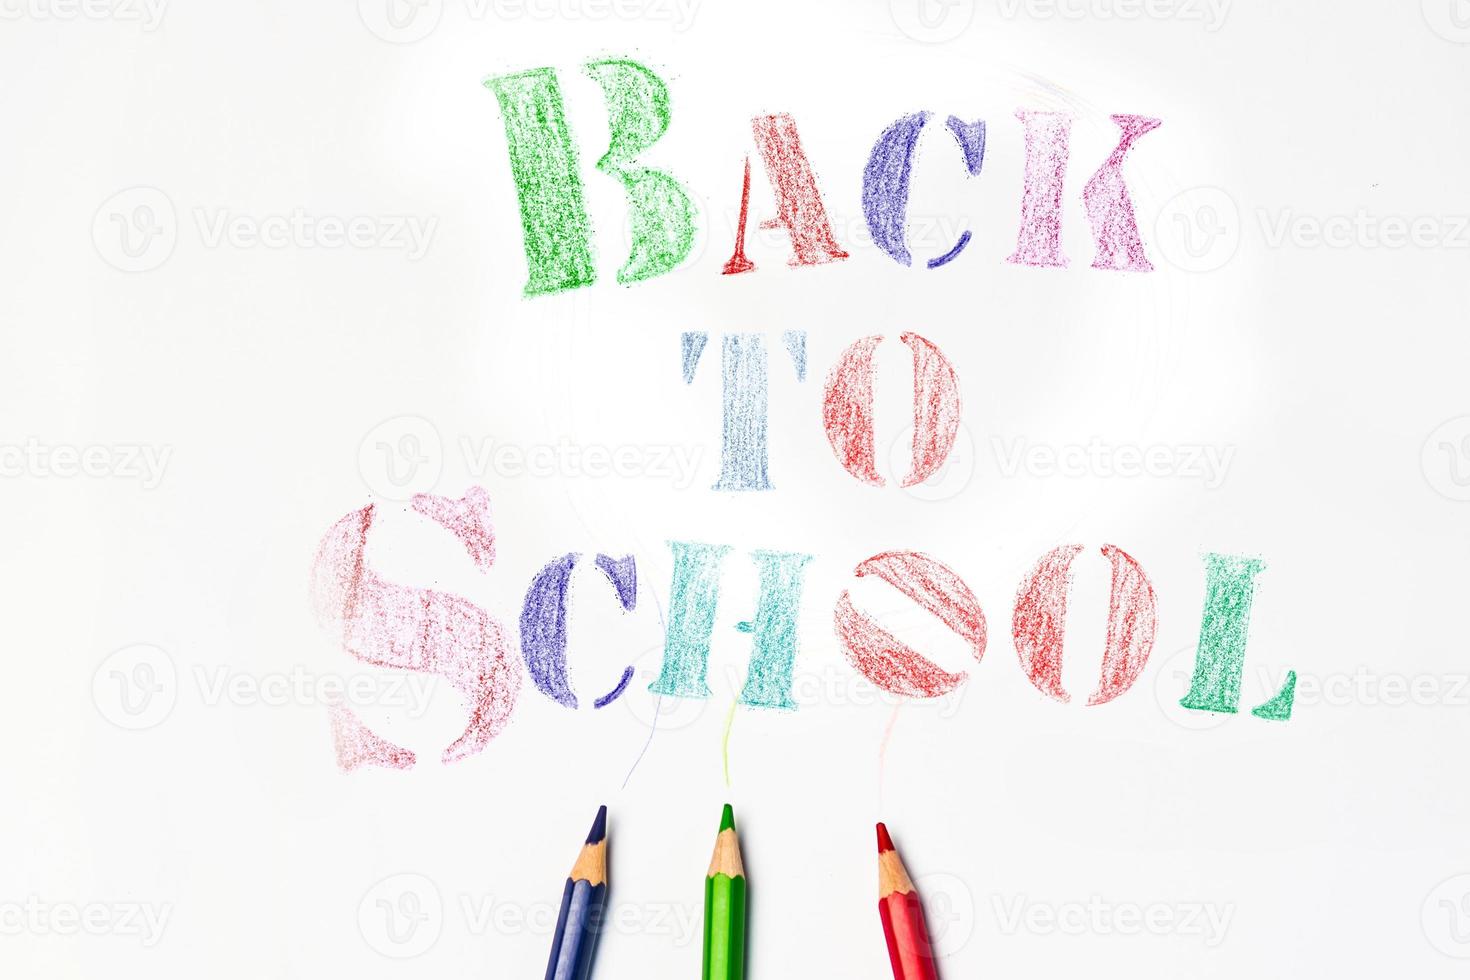 bovenaanzicht bannerbericht terug naar school met kleurpotlooditems voor de school op witte achtergrond foto